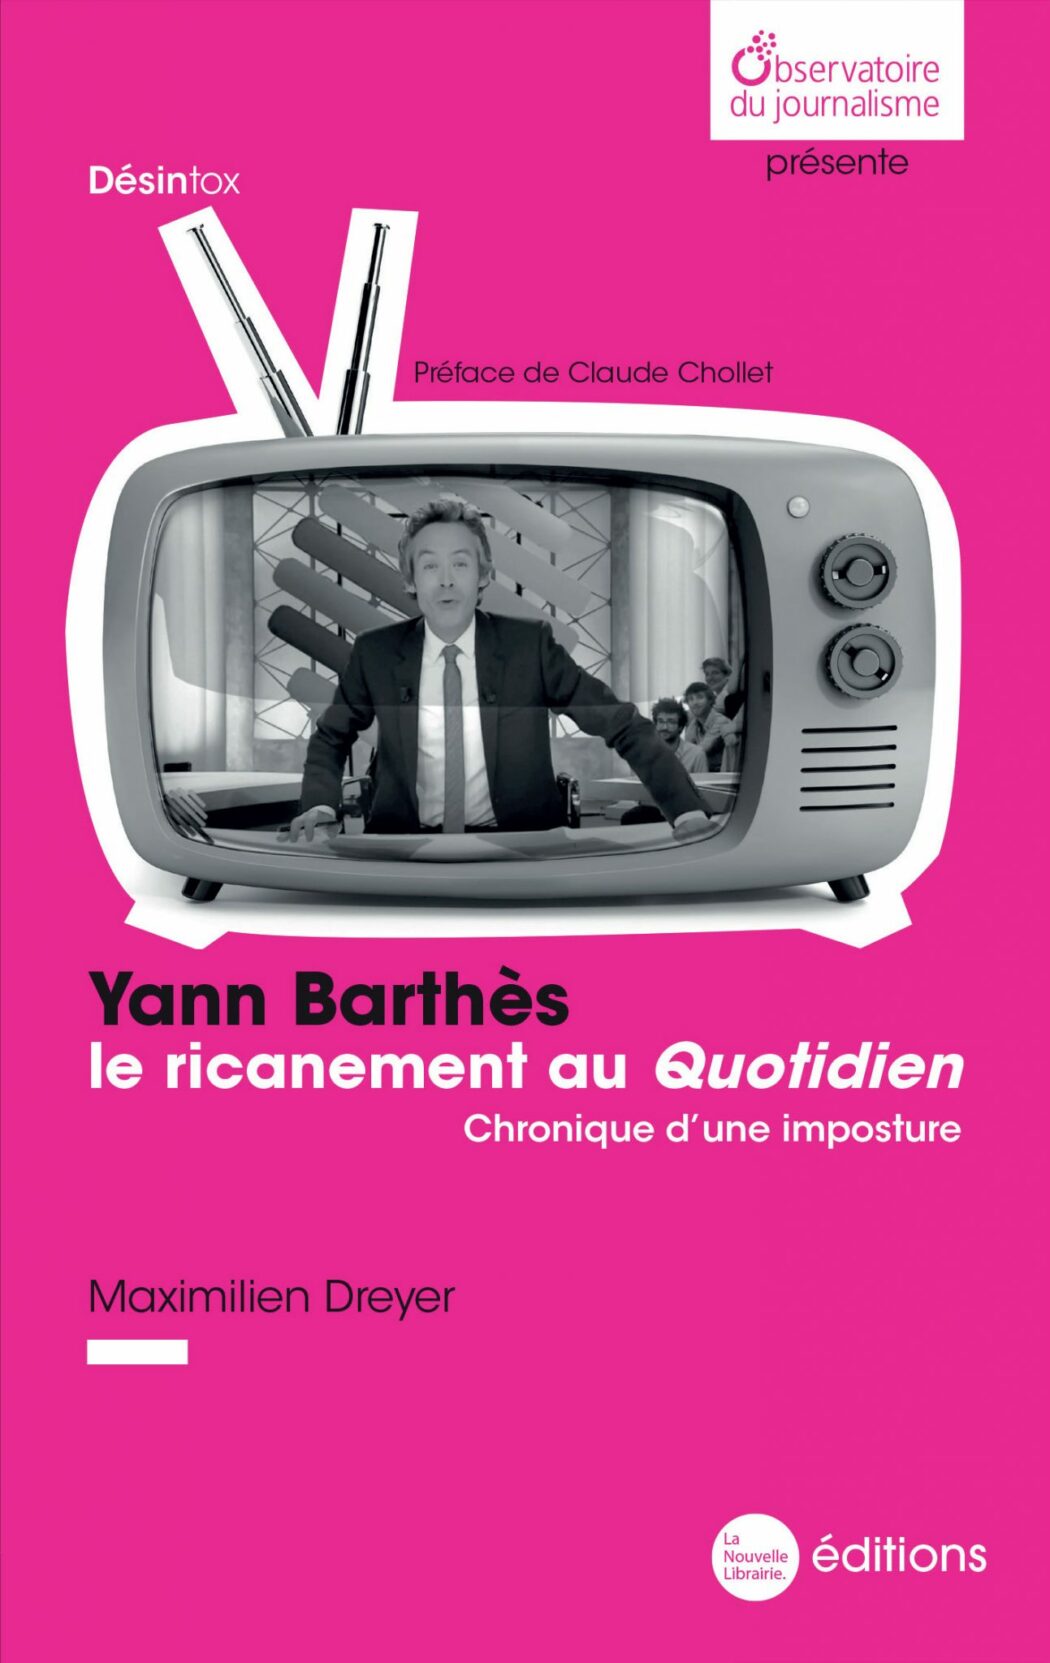 Yann Barthès et Quotidien : narcissisme et délation